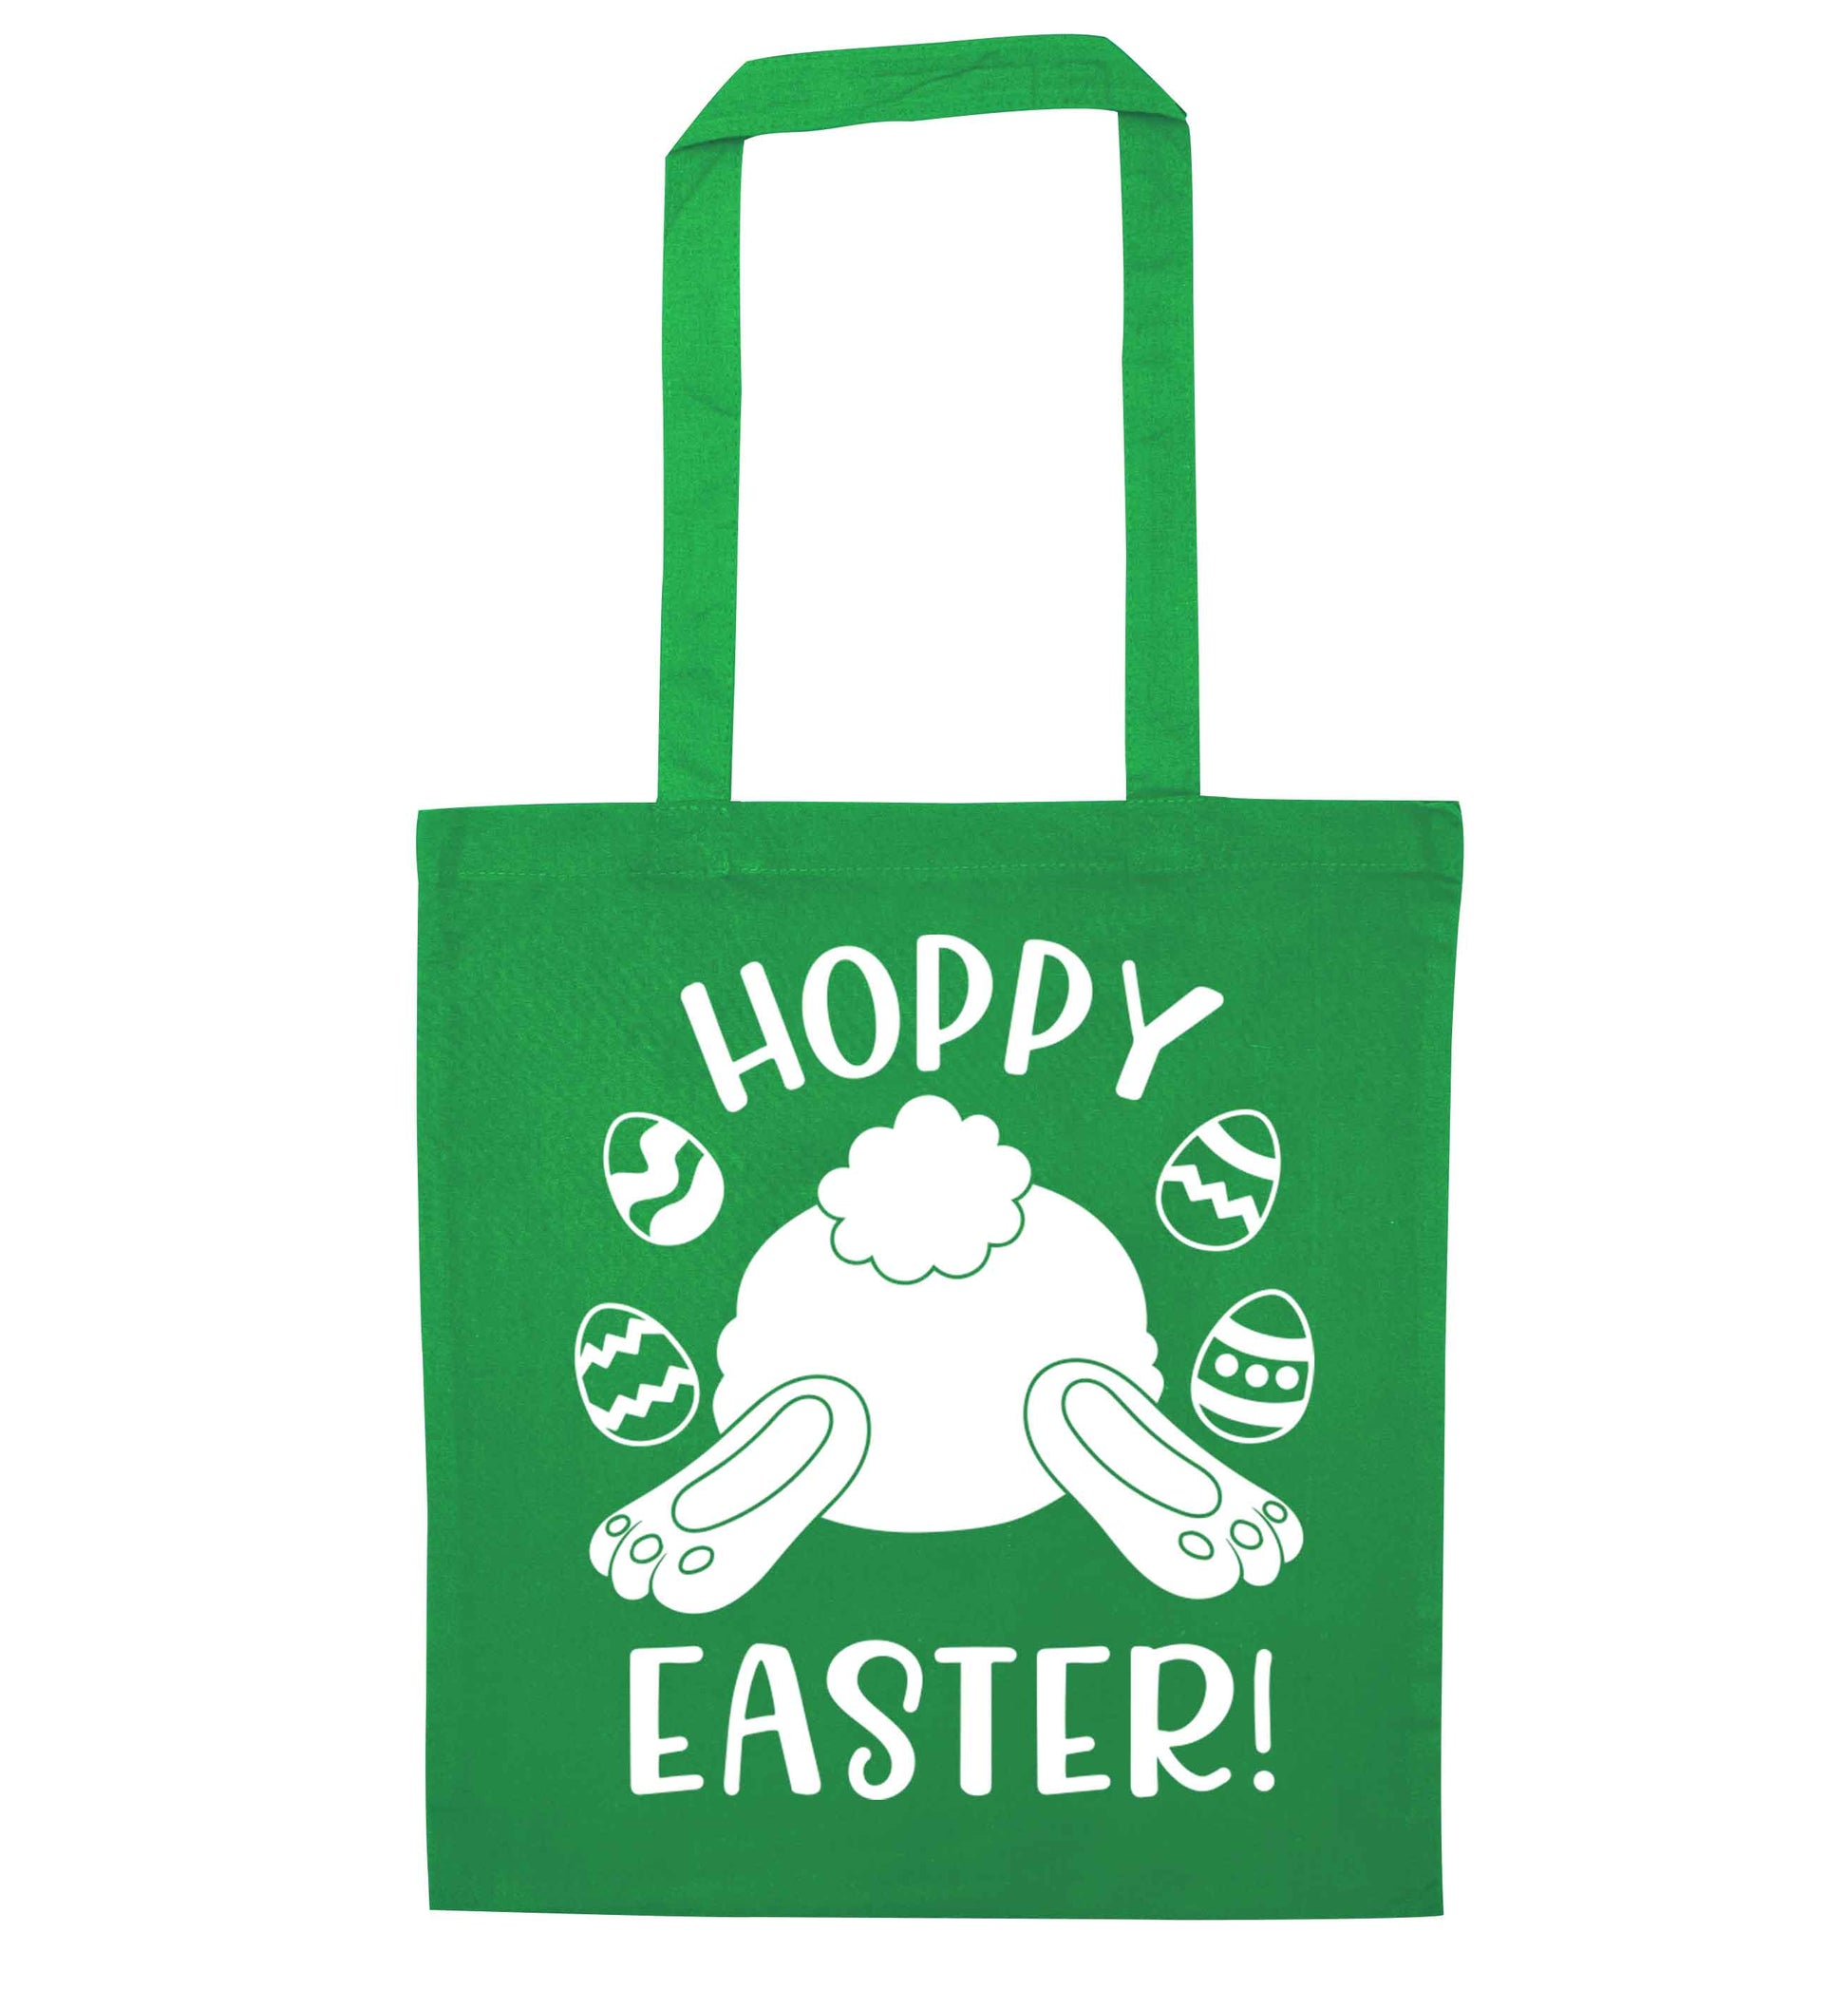 Hoppy Easter green tote bag